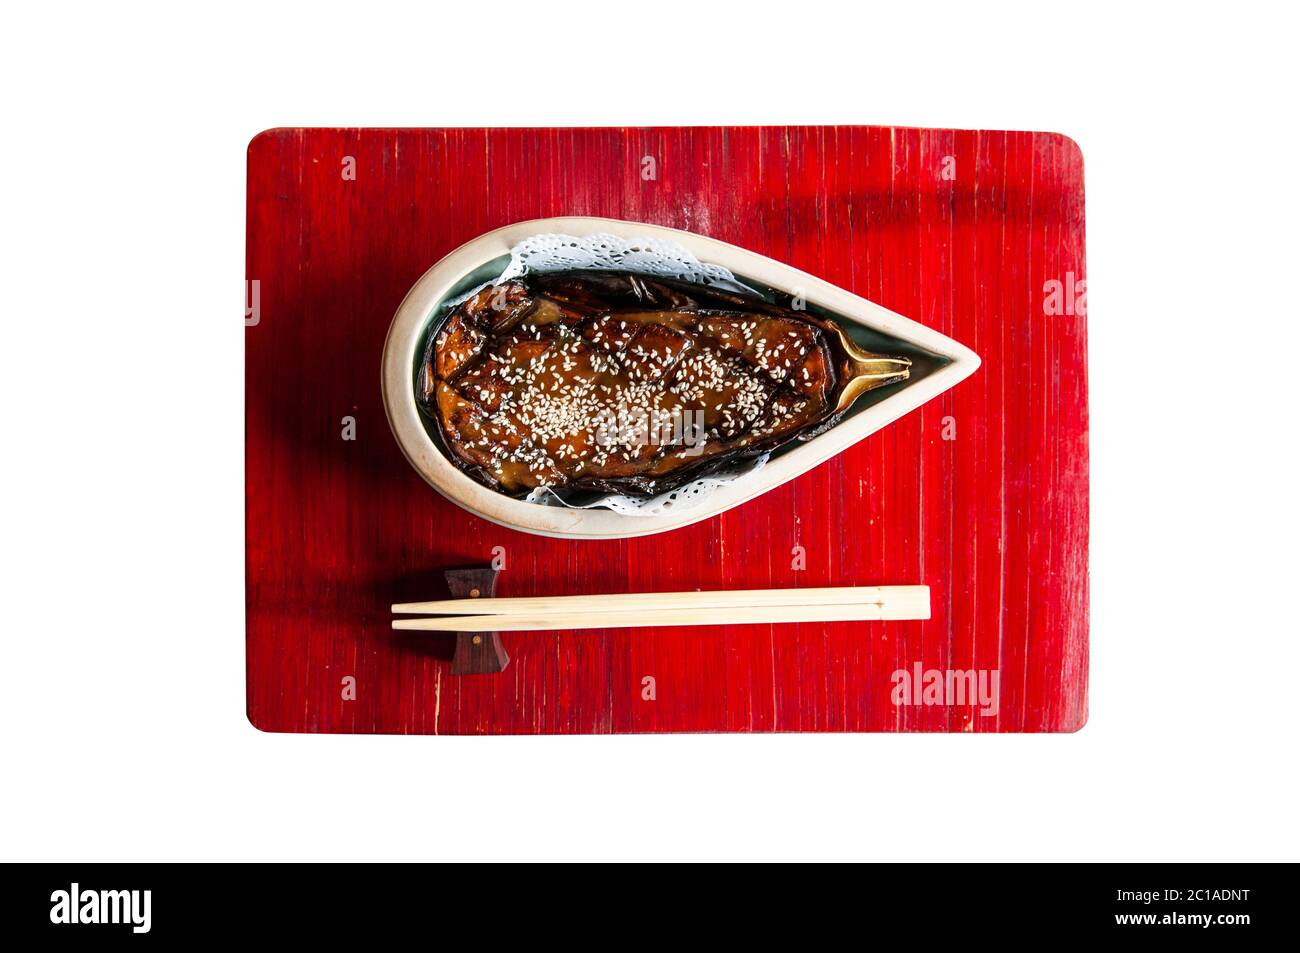 Belle recette d'aubergines grillées japonaises avec sauce miso sucrée sur plateau en bois rouge Banque D'Images